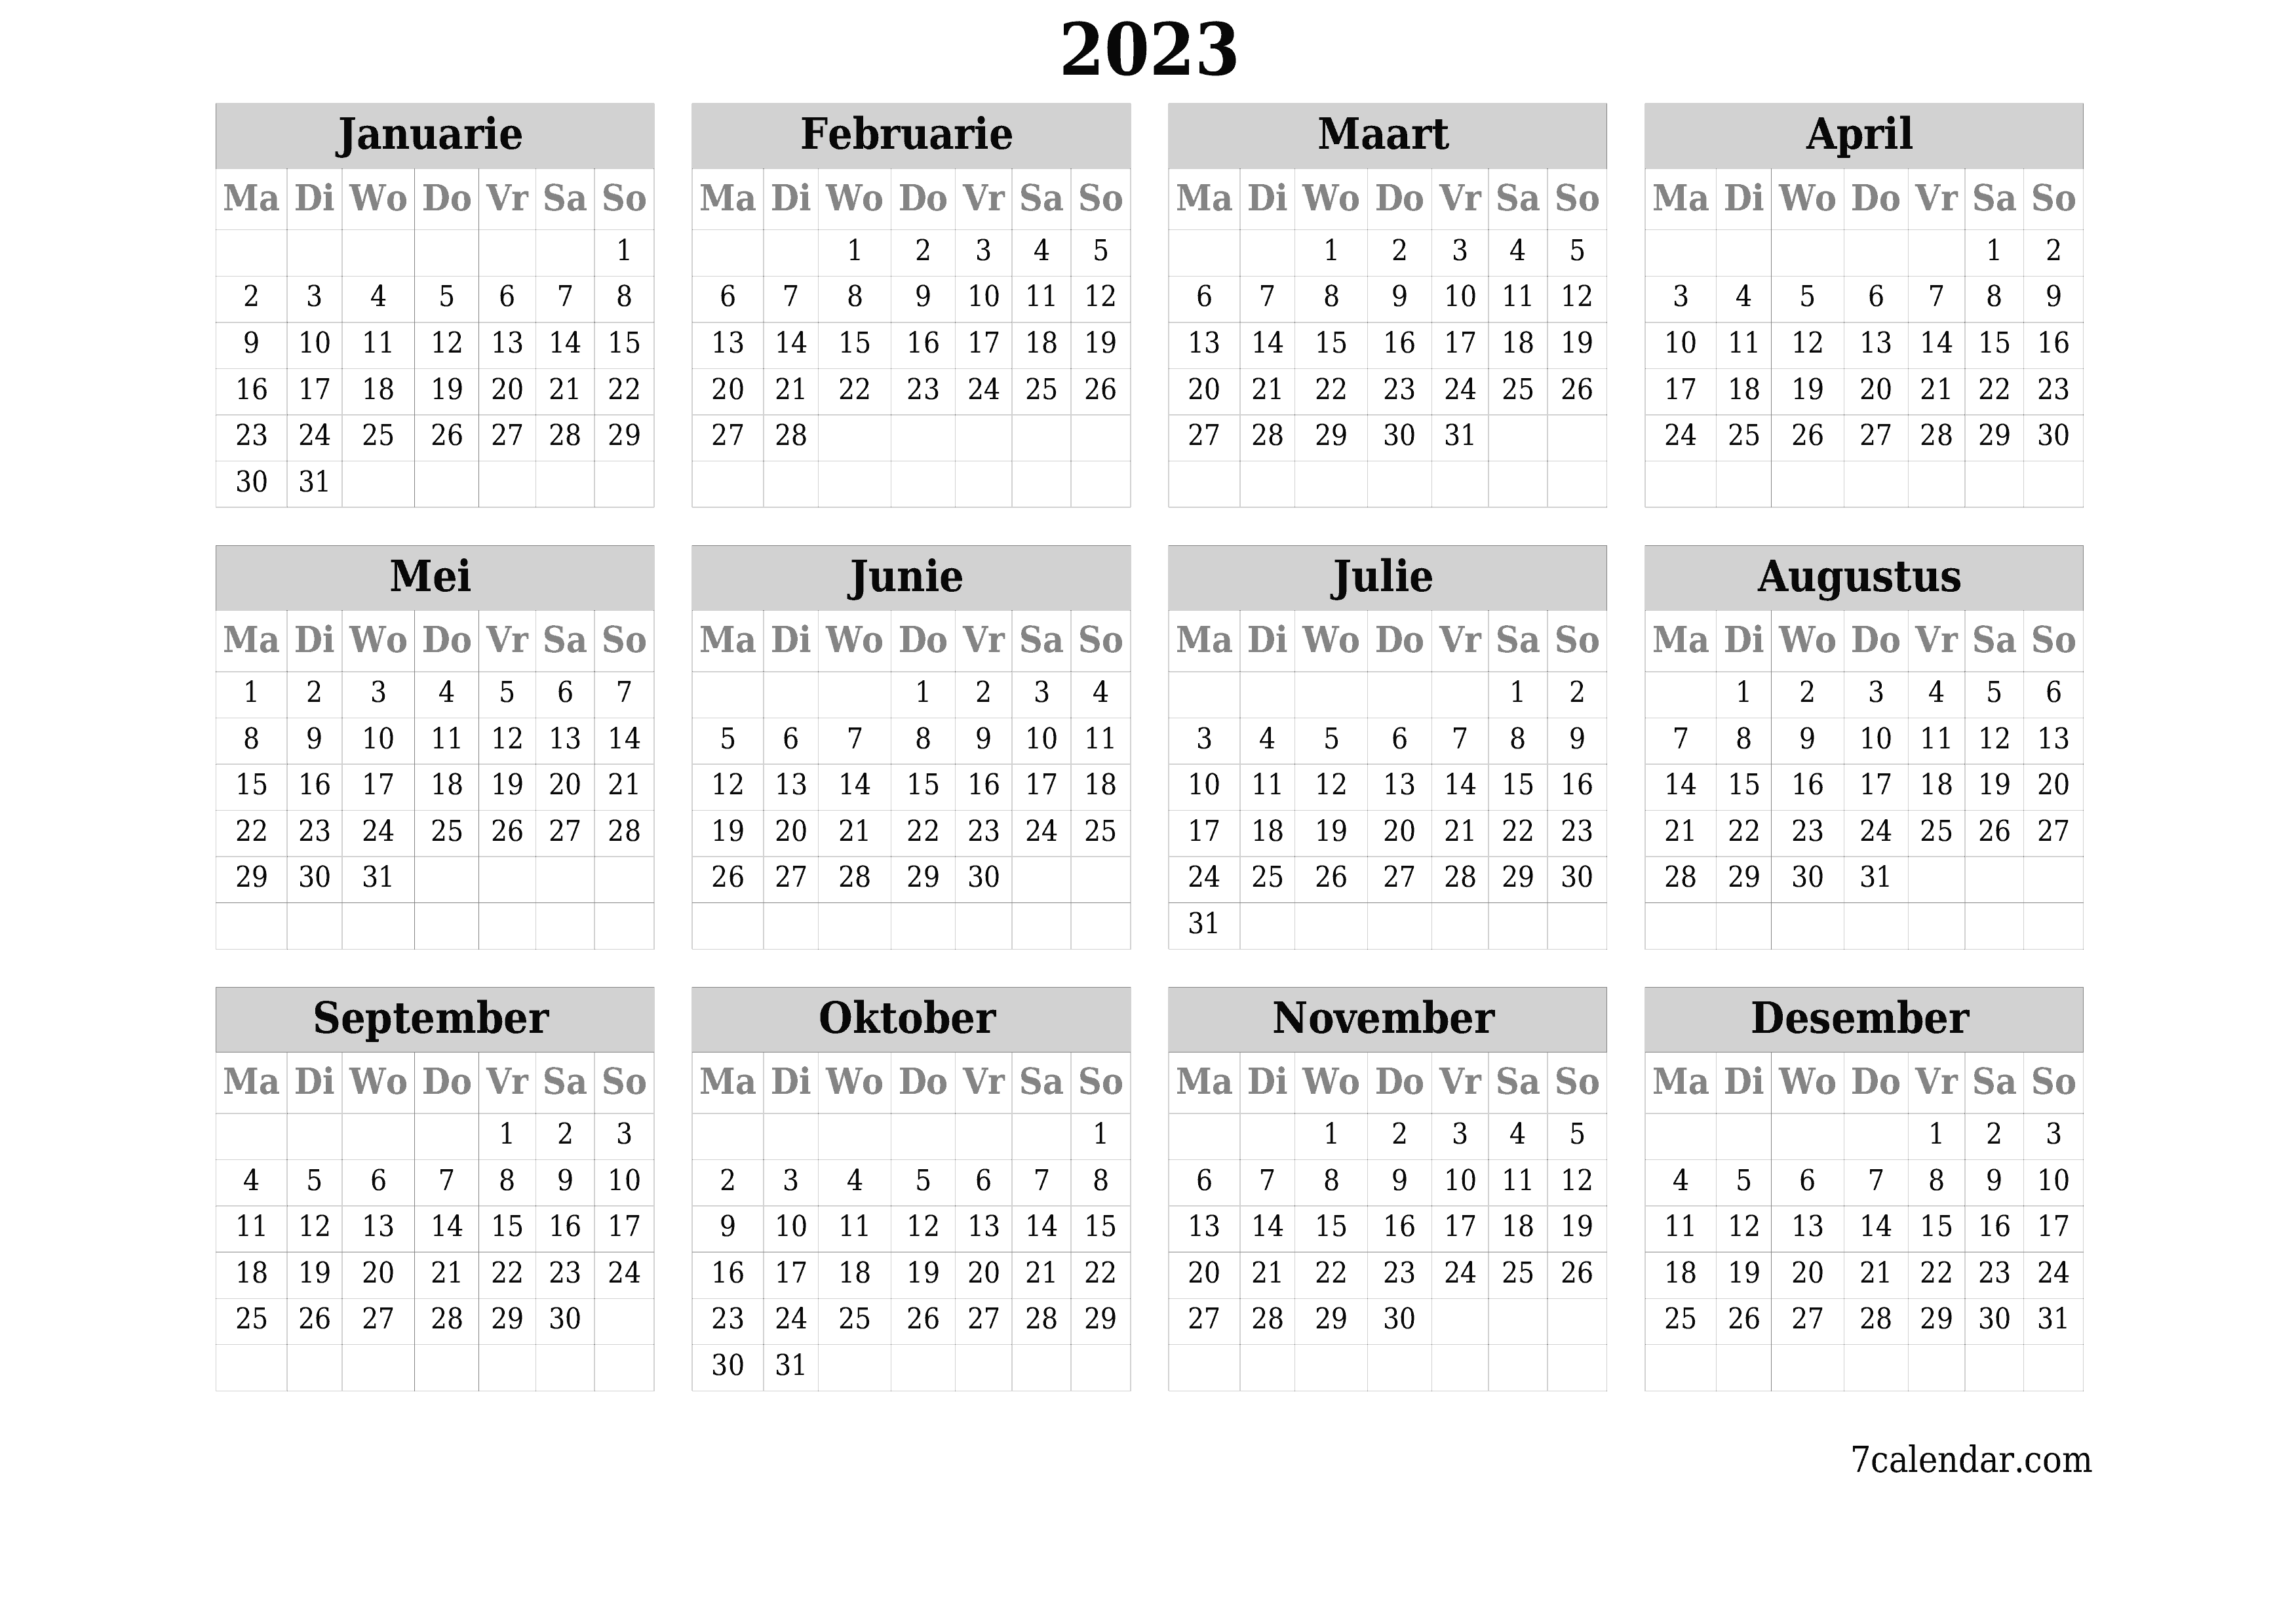 Leë jaarlikse drukbare kalender en beplanner vir die jaar 2023 met notas, stoor en druk na PDF PNG Afrikaans - 7calendar.com